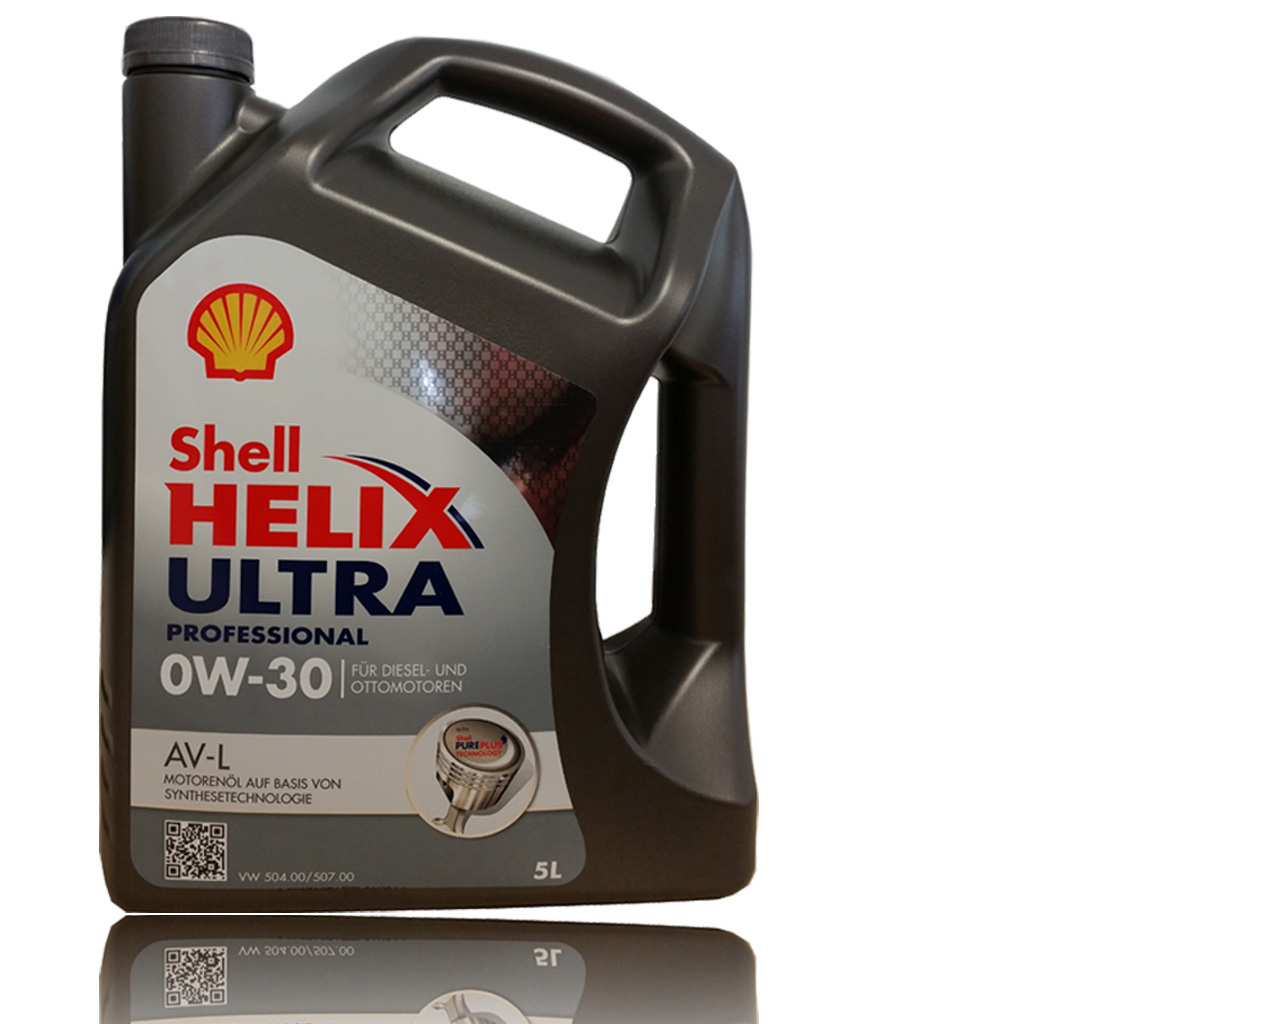 Масло 0w30 504. Helix Ultra professional av-l 0w-30. Shell Helix Ultra 0w-30 504/507. Shell Helix Ultra av 0w-30. VW 504.00/507.00 Shell.